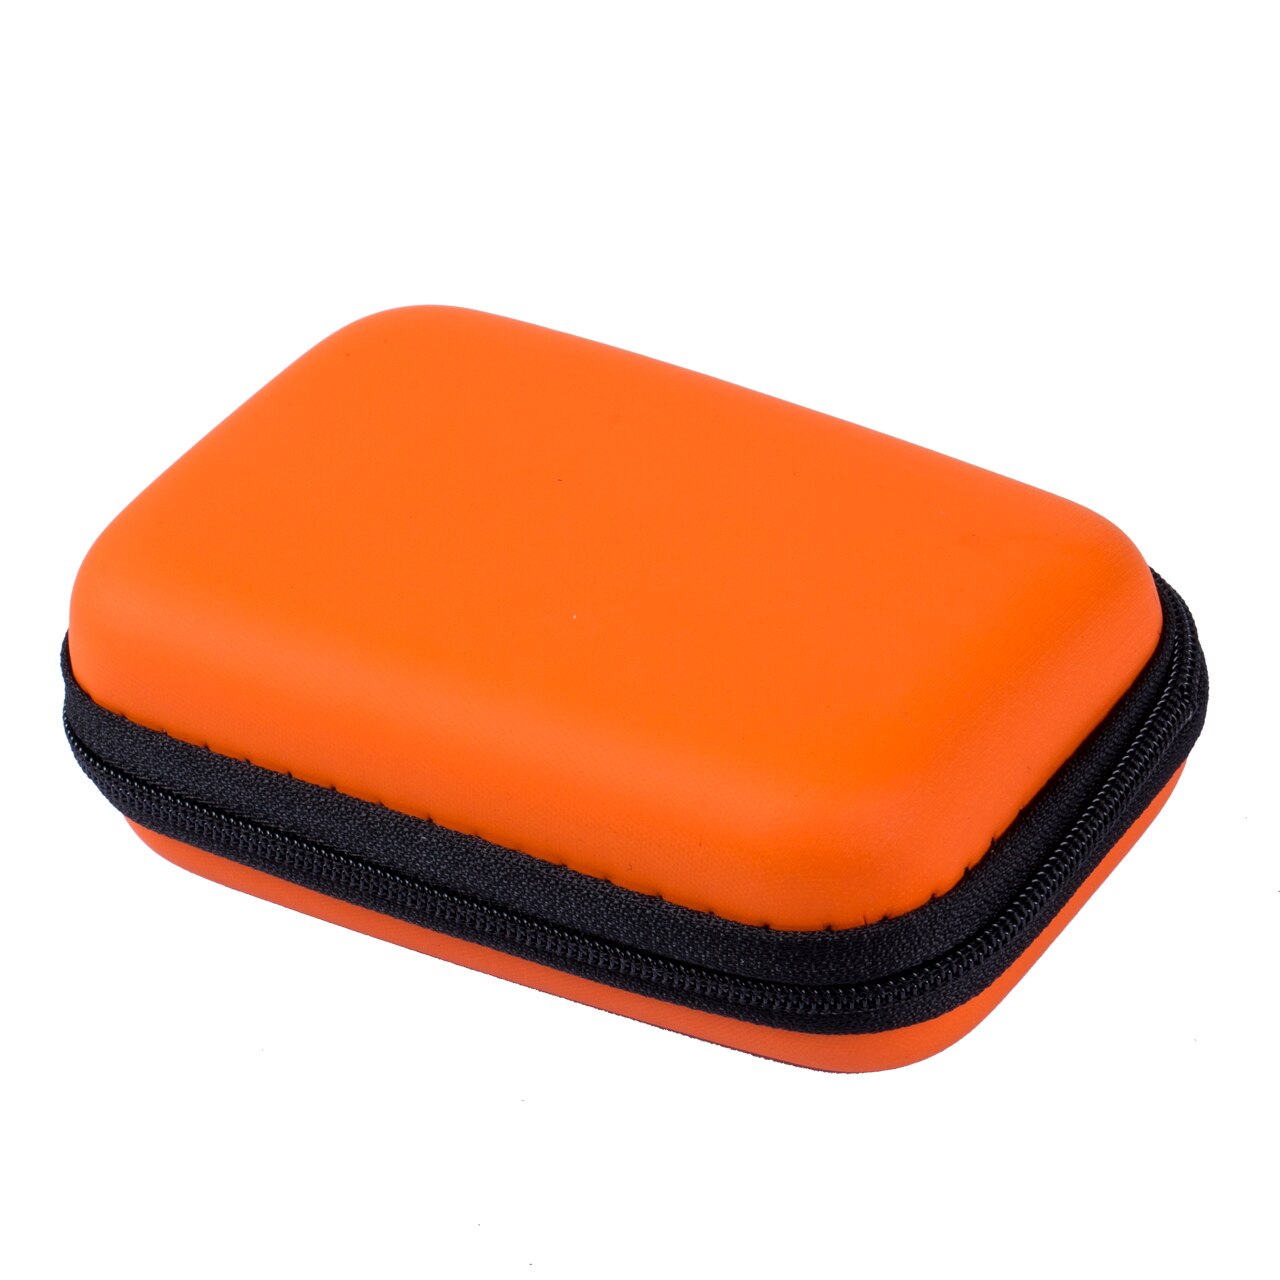 Bærbart rejsehovedtelefon øretelefon øretelefon kabel opbevaringspose taske hårdt etui indsæt flashdrev: Orange